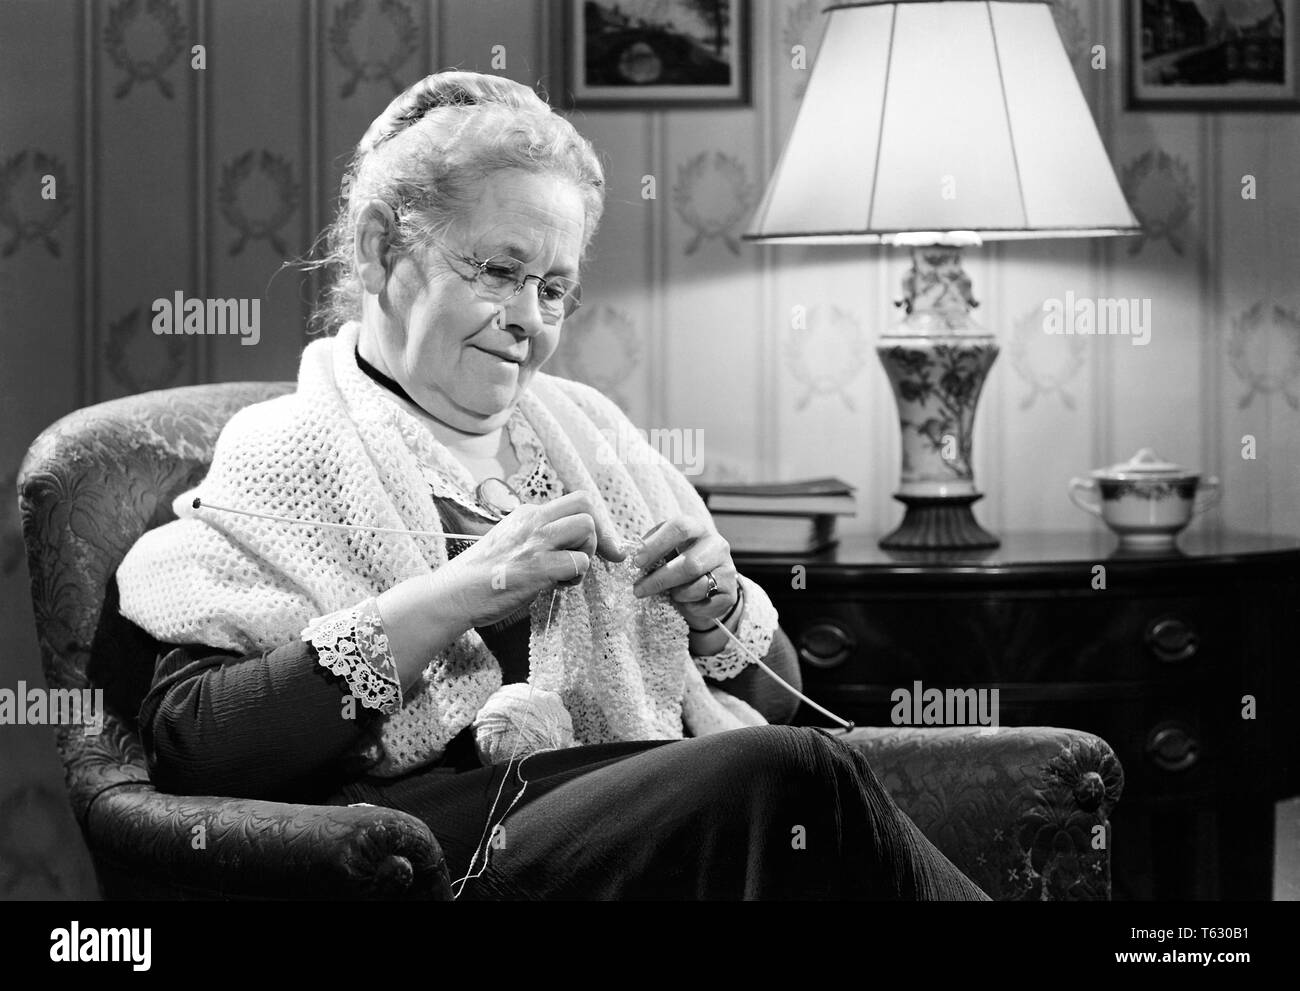 1950 lächelnde Frau Großmutter OMA Brille tragen Schal stricken SITZEN-s 10005 RCH001 HARS FREUDE LIFESTYLE ZUFRIEDENHEIT PARENTING ÄLTERE FRAUEN GROSSELTERN BEZUG GROWNUP HOME LEBEN MIT HALBER LÄNGE DAMEN PERSONEN ERWACHSEN GRANNY GELASSENHEIT VERTRAUEN BRILLEN älterer Erwachsener B&W SENIOR FRAU GLÜCK ALTER OLDSTERS FRÖHLICHEN ALTEN FREIZEITAKTIVITÄTEN AUGENSCHUTZ WISSEN FREIZEIT STOLZ BEZIEHUNGEN SCHAL LÄCHELN ÄLTESTEN FREUDIGE STILVOLLE OMA BRILLE ÄLTERE FRAU ELTERLICHE ELTERNSCHAFT PERSONEN ERWACHSENE ENTSPANNUNG ZWEISAMKEIT SCHWARZ UND WEISS KAUKASISCHEN ETHNIE ALTMODISCH Stockfoto